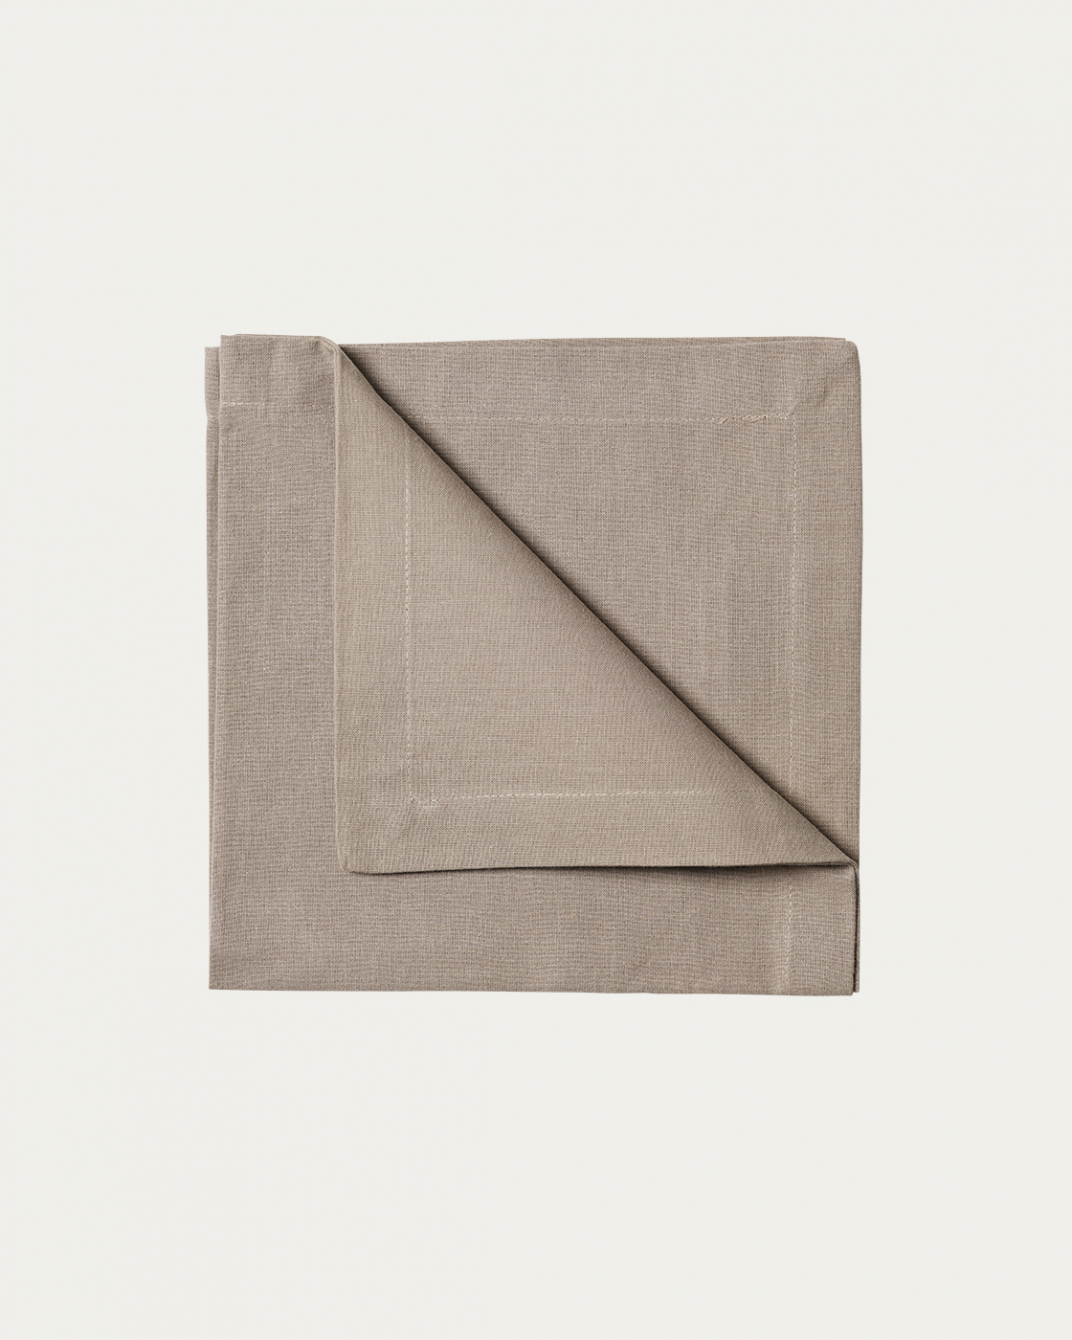 Image du produit serviette de table ROBERT taupe en coton doux de LINUM DESIGN. Taille 45 x 45 cm et vendu en lot de 4.